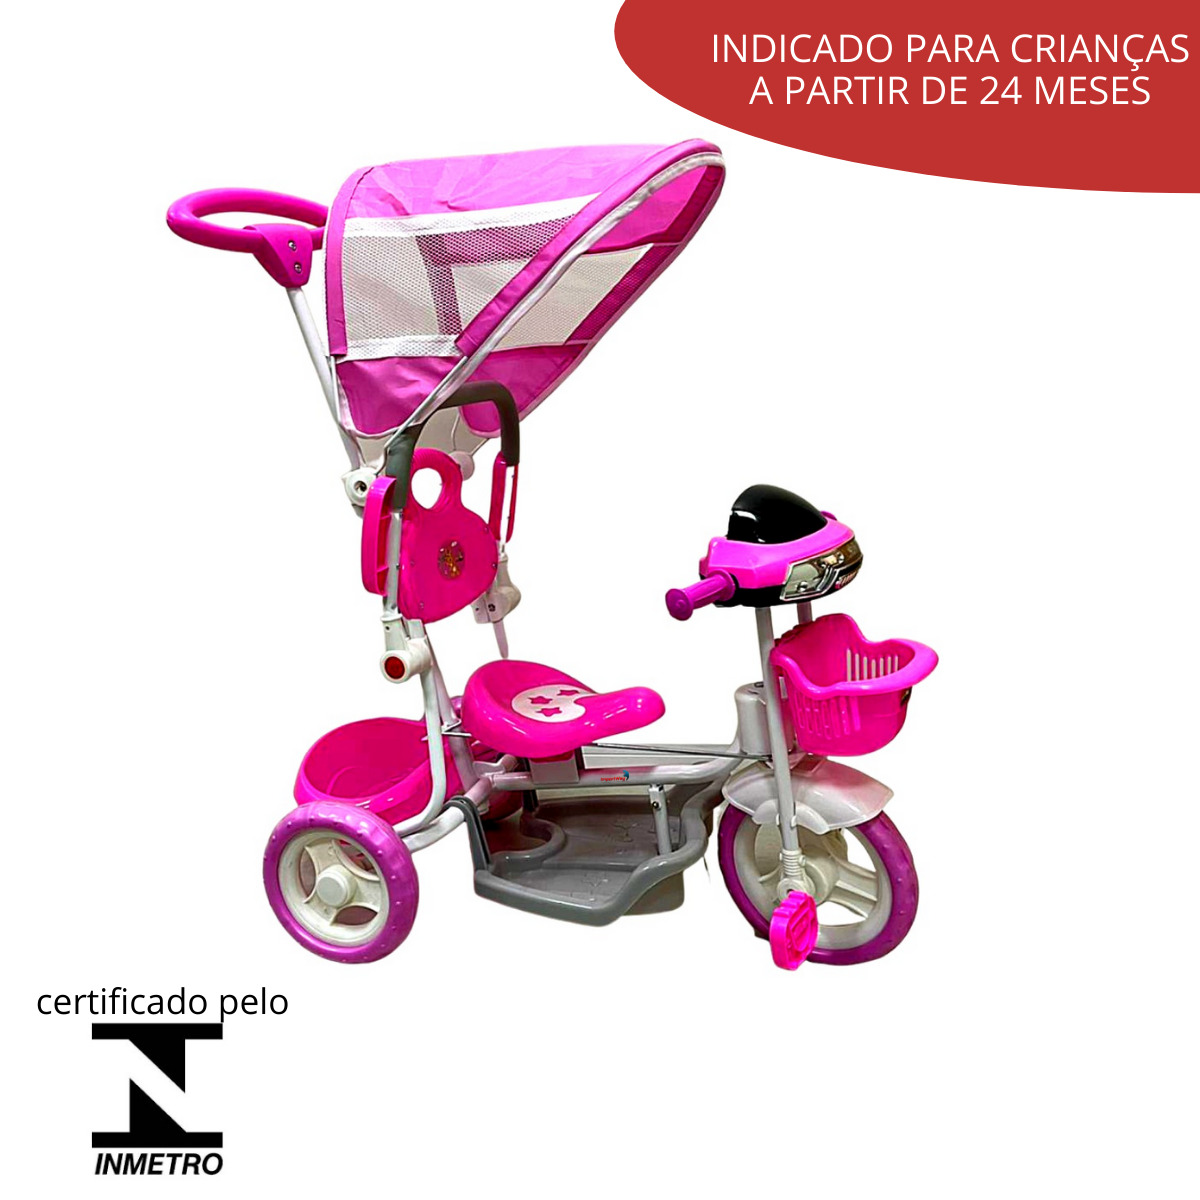 Triciclo Infantil 2 Em 1 Rosa BW003RS